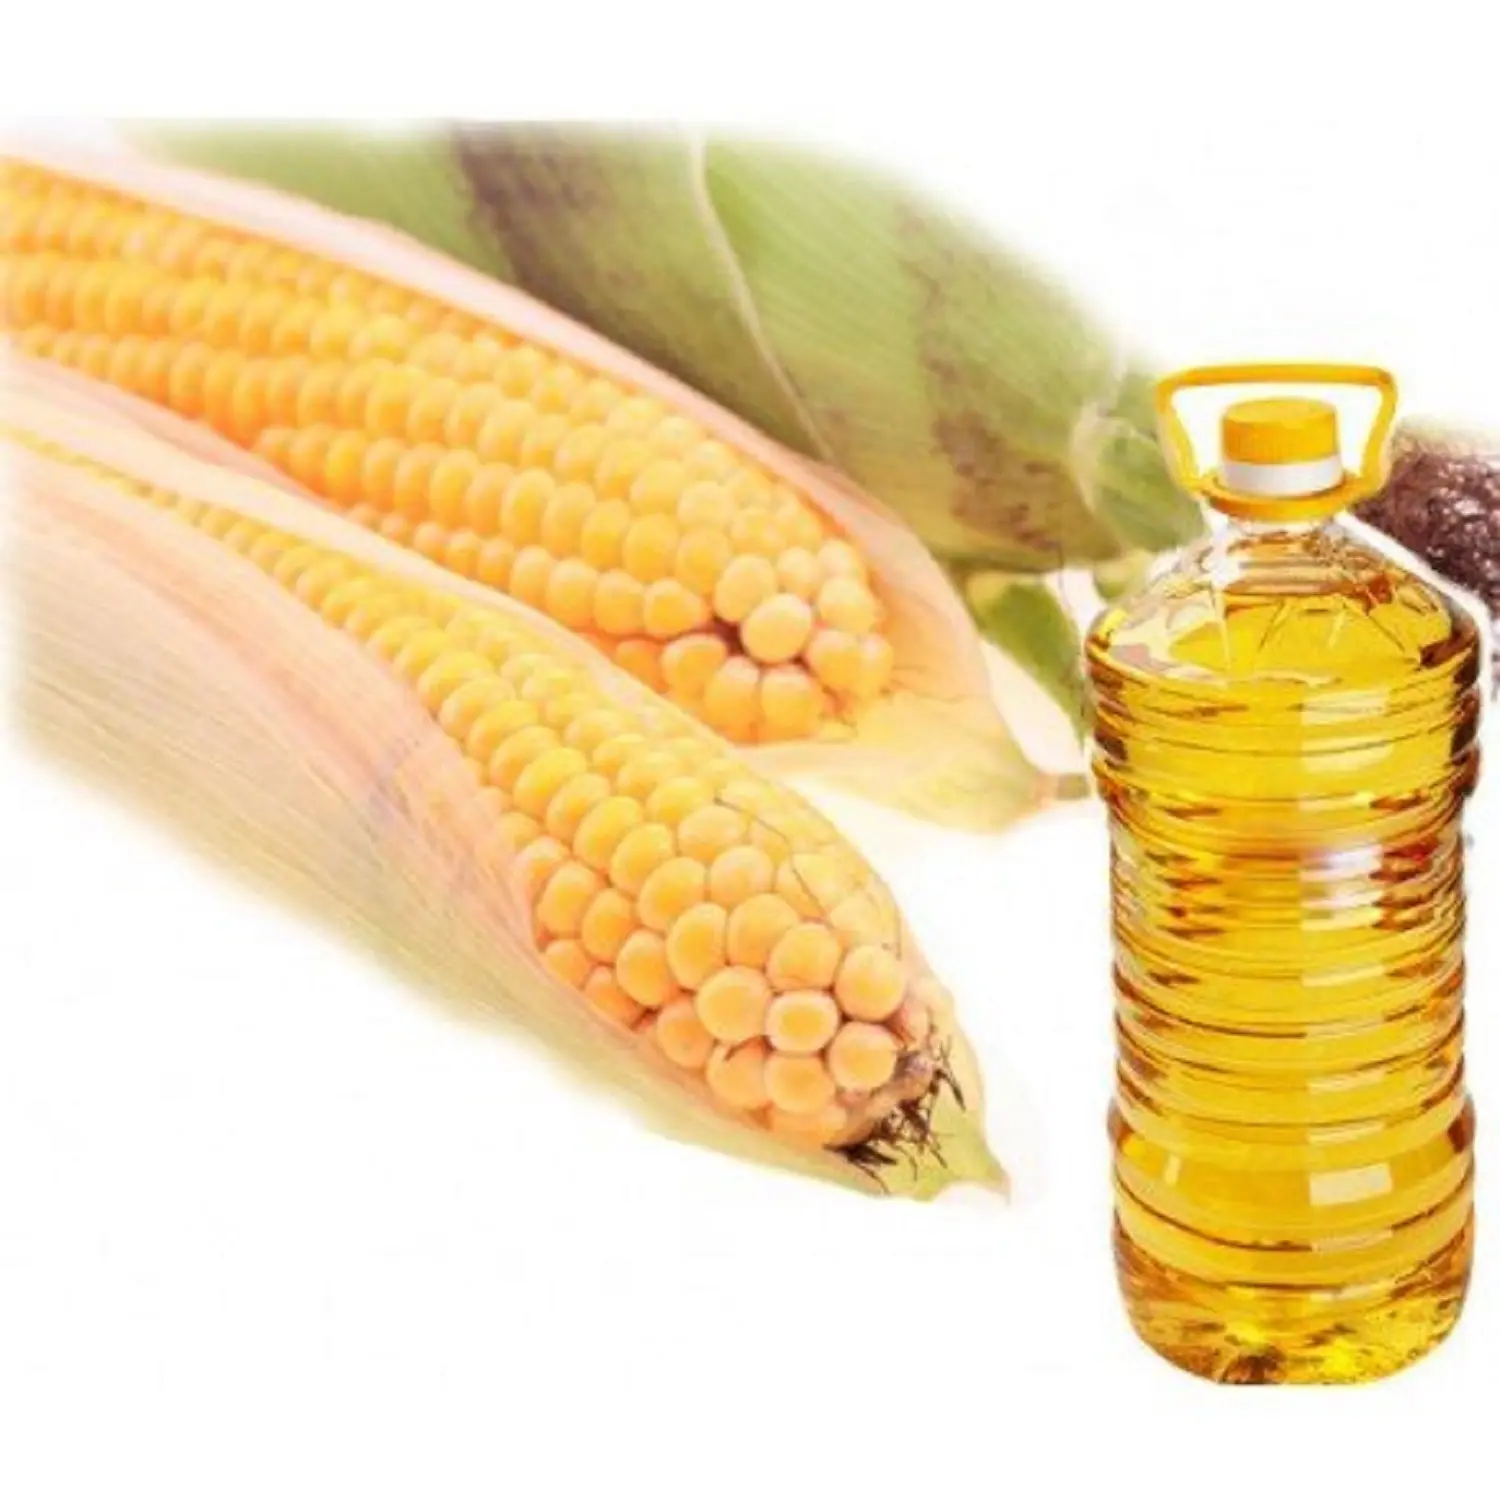 Purity Refined Corn Oil / Refined 100% Pure Corn Oil Wholesale Price